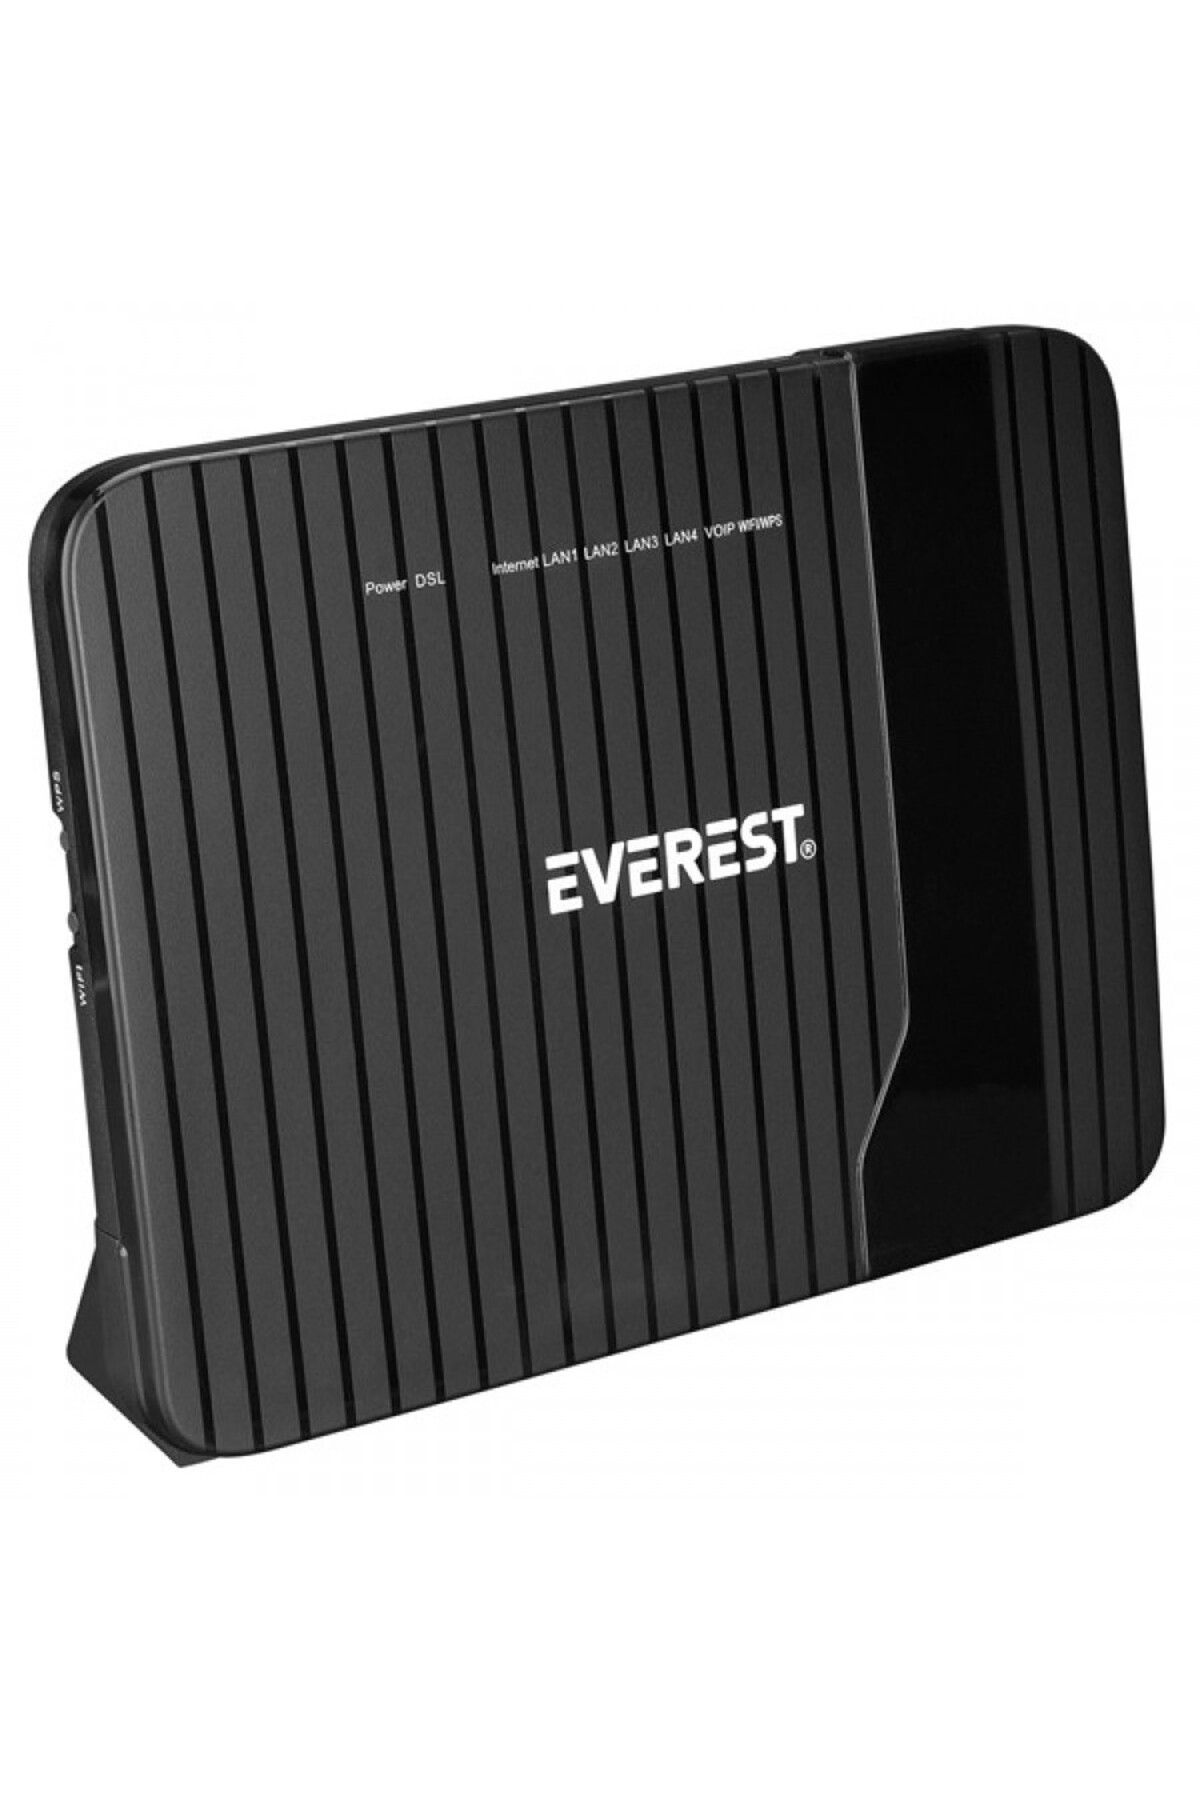 Everest SG-V400 2.4GHz 300Mbps ADSL2+/VDSL2 2*5dBi Dahili Antenli VoIP Destekli Kablosuz Modem Rout